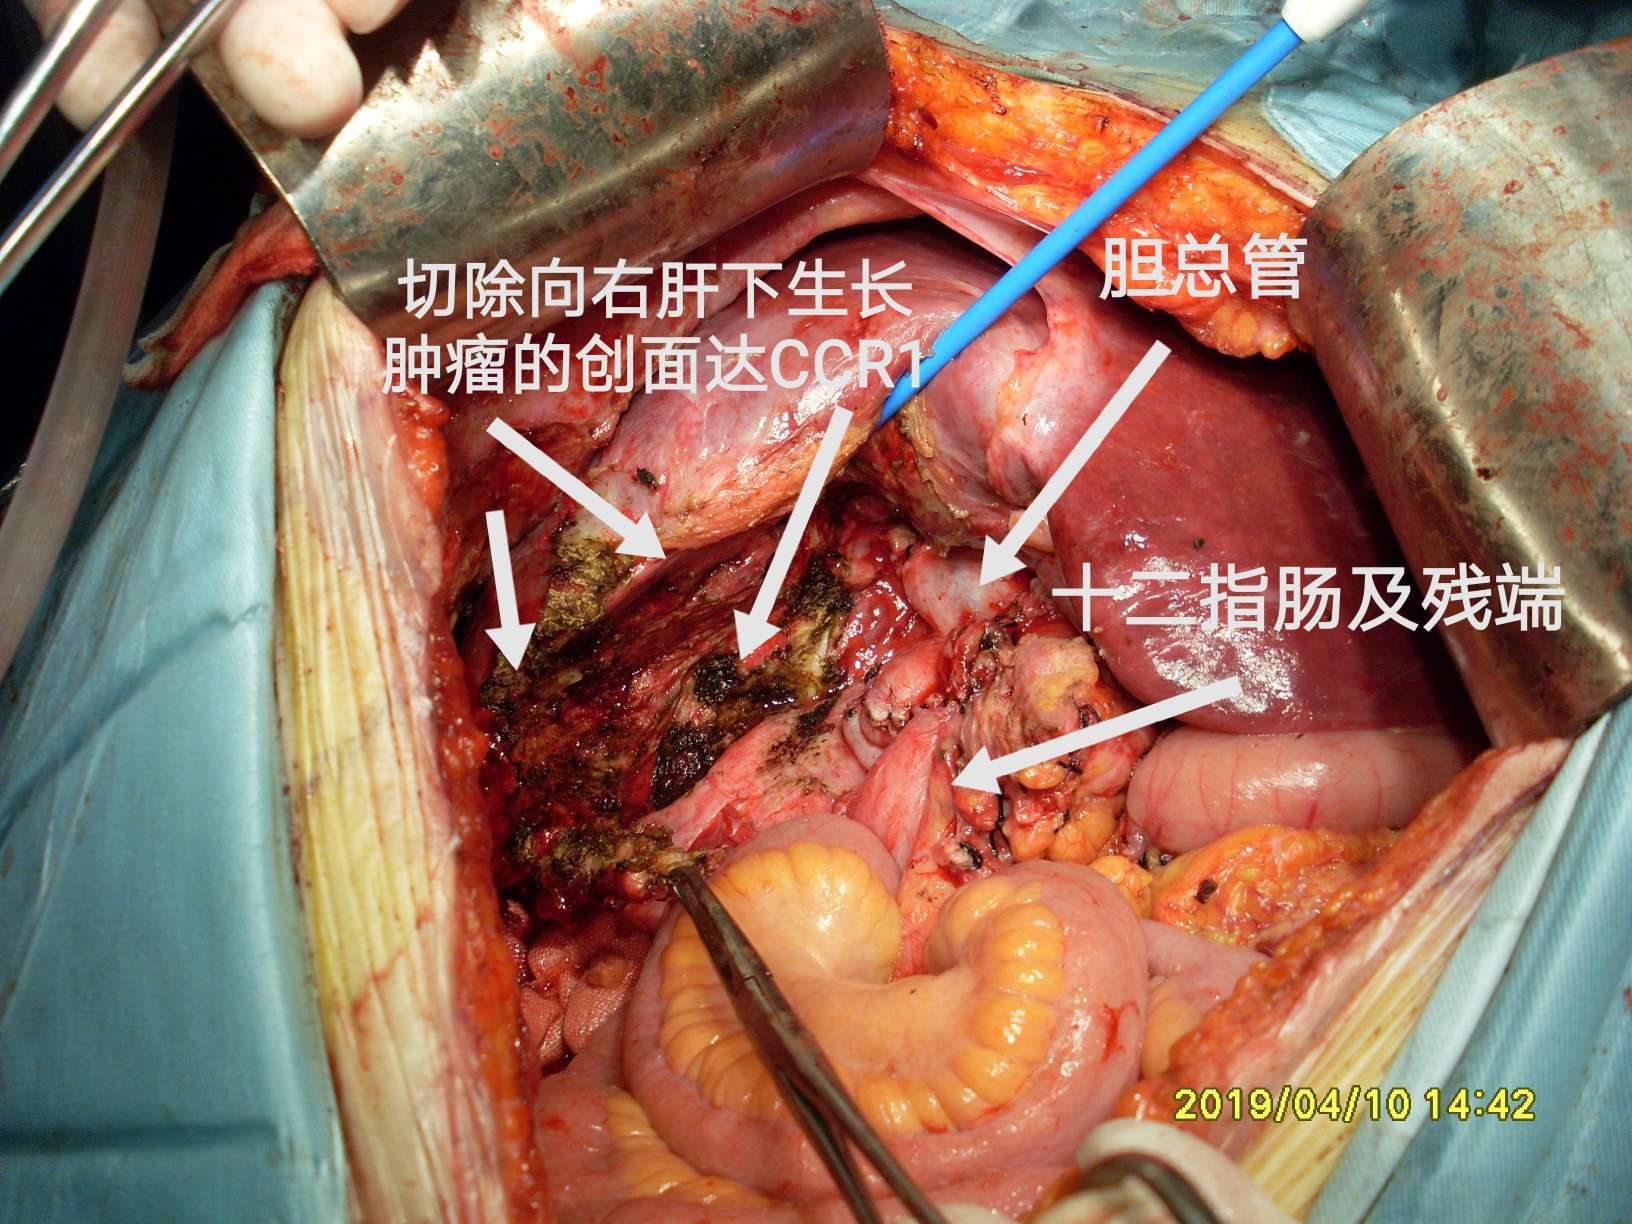 病例(40-结肠肝曲粘液腺癌突破肠管向外生长!